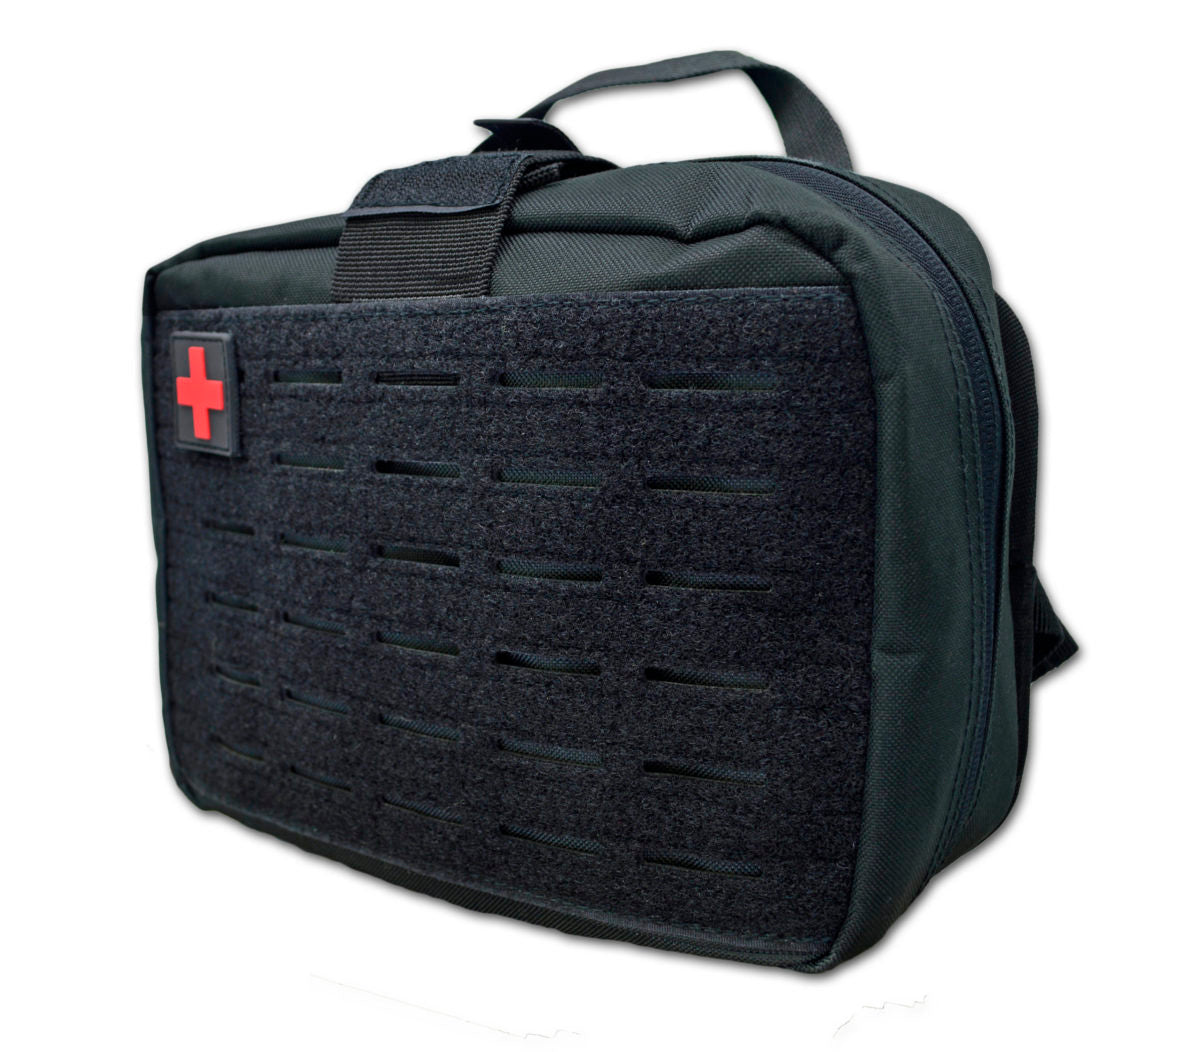 LXPB50 Rip-Away IFAK Trauma Bag for Car Head Rest - SERVOXY INC